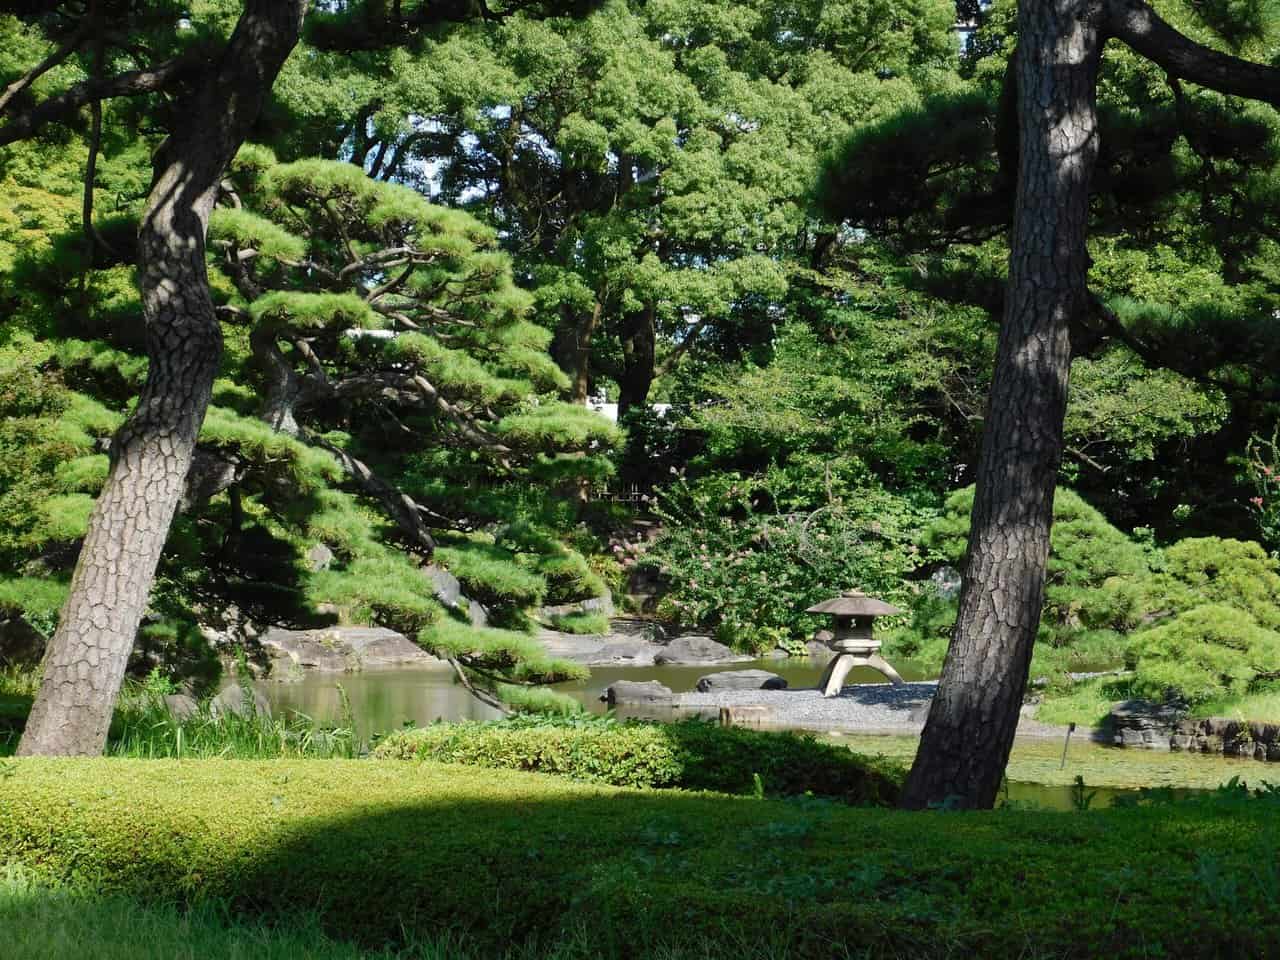 Ninomaru Garden at the East Gardens in Tokyo.